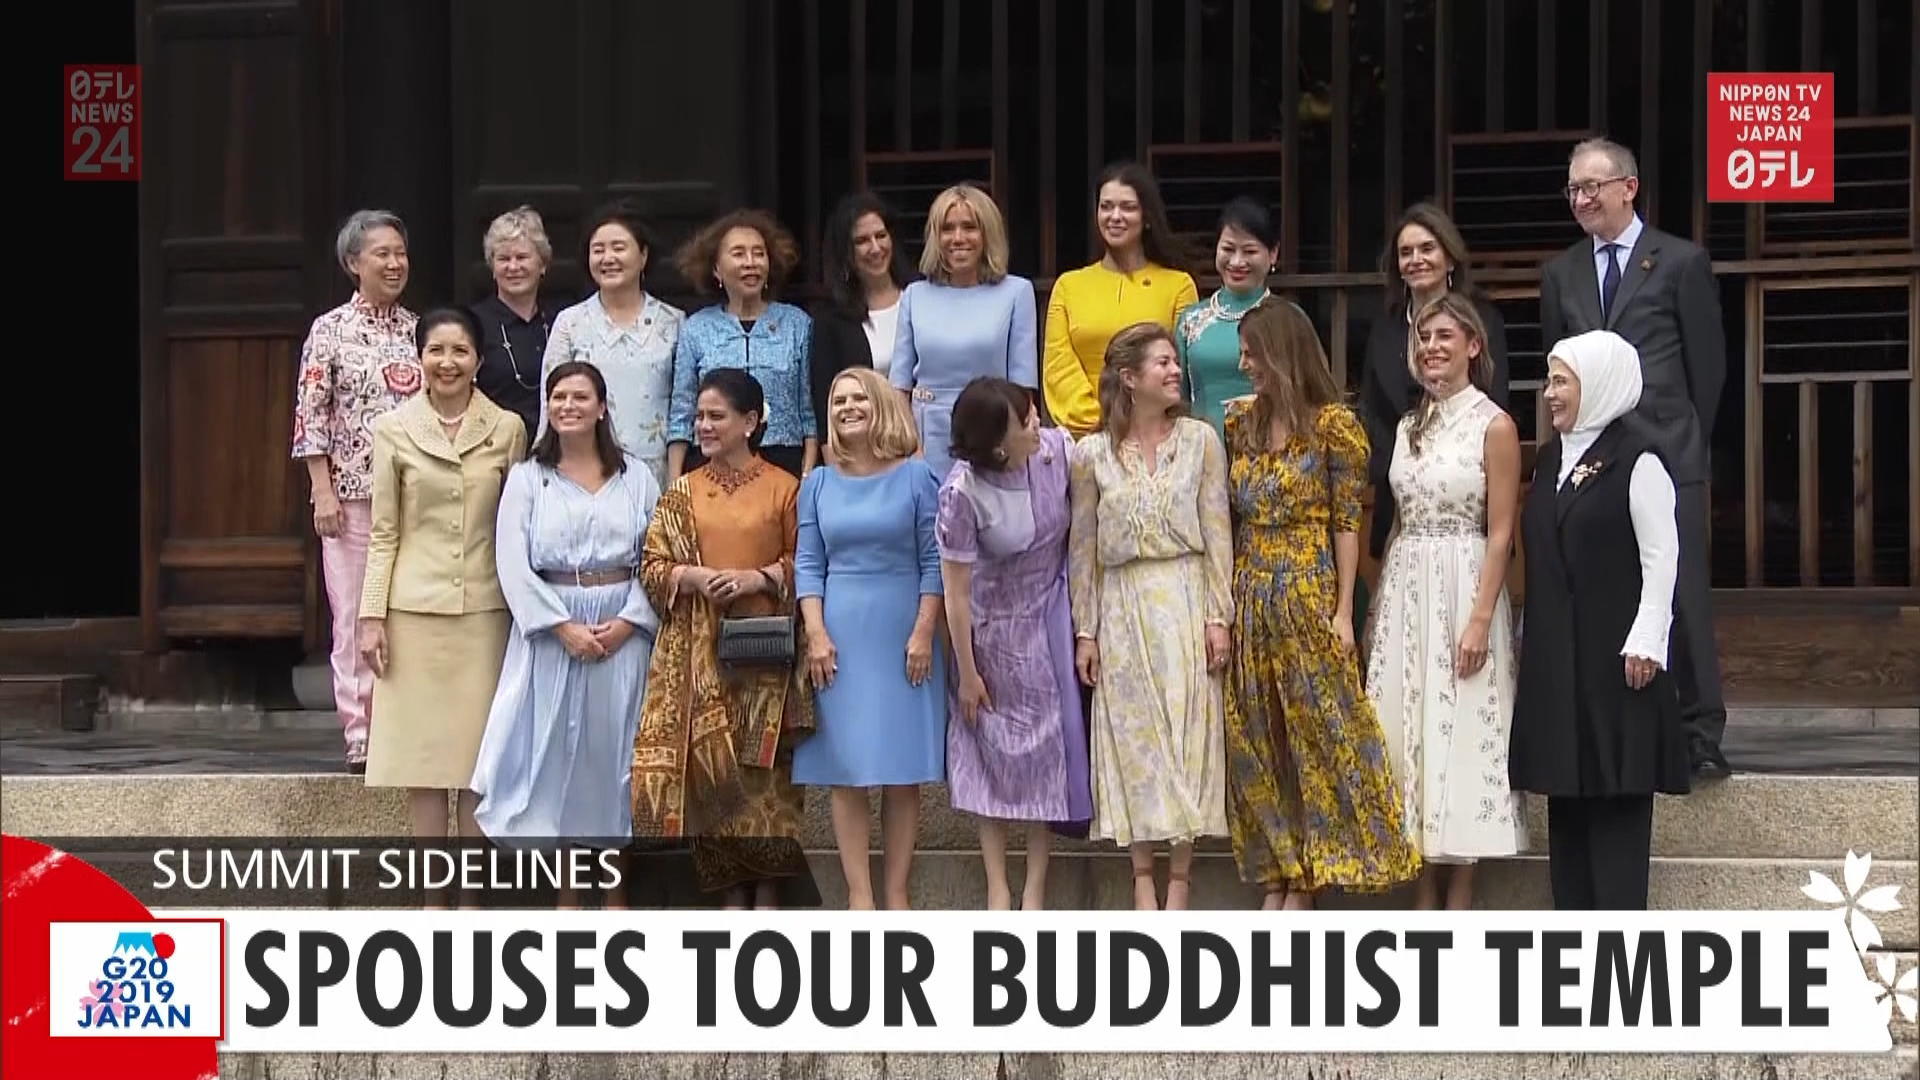 G20: Spouses tour Buddhist temple